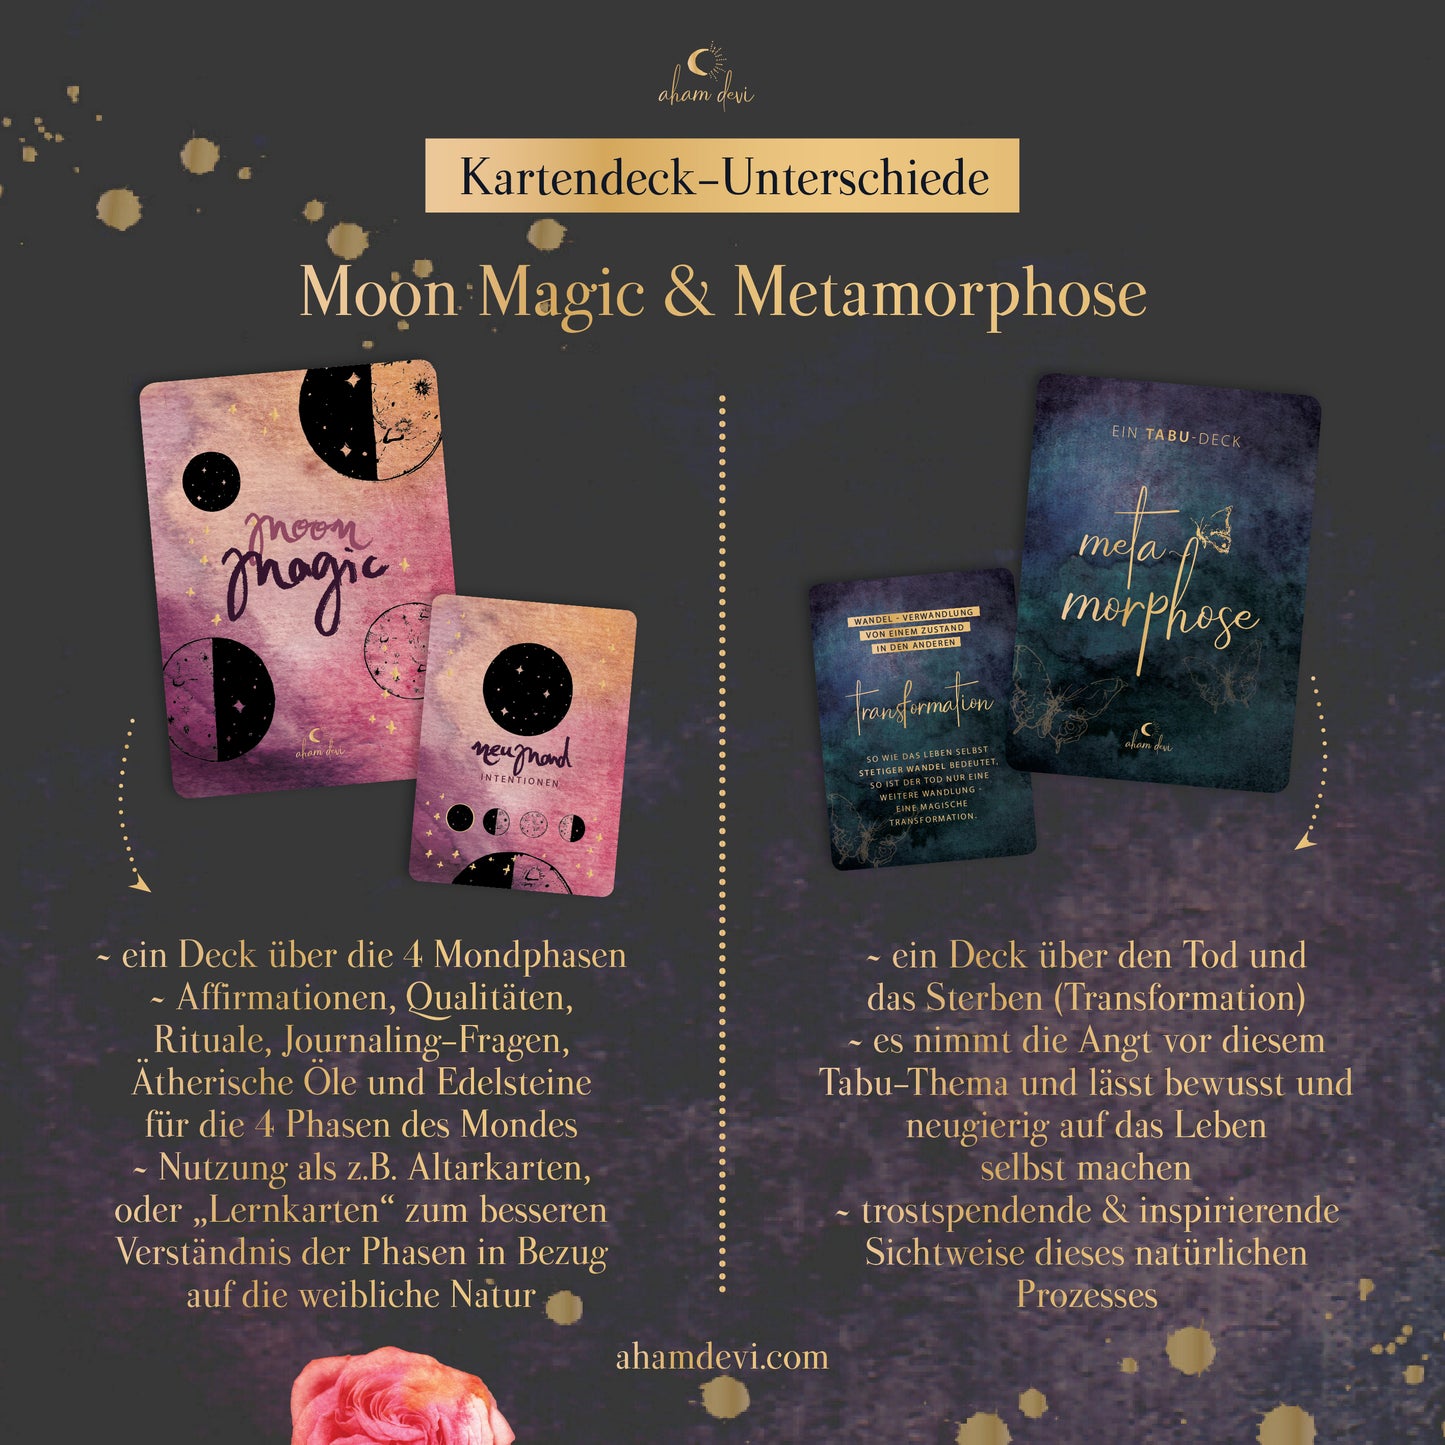 MoonMagic und Metamorphose im Vergleich